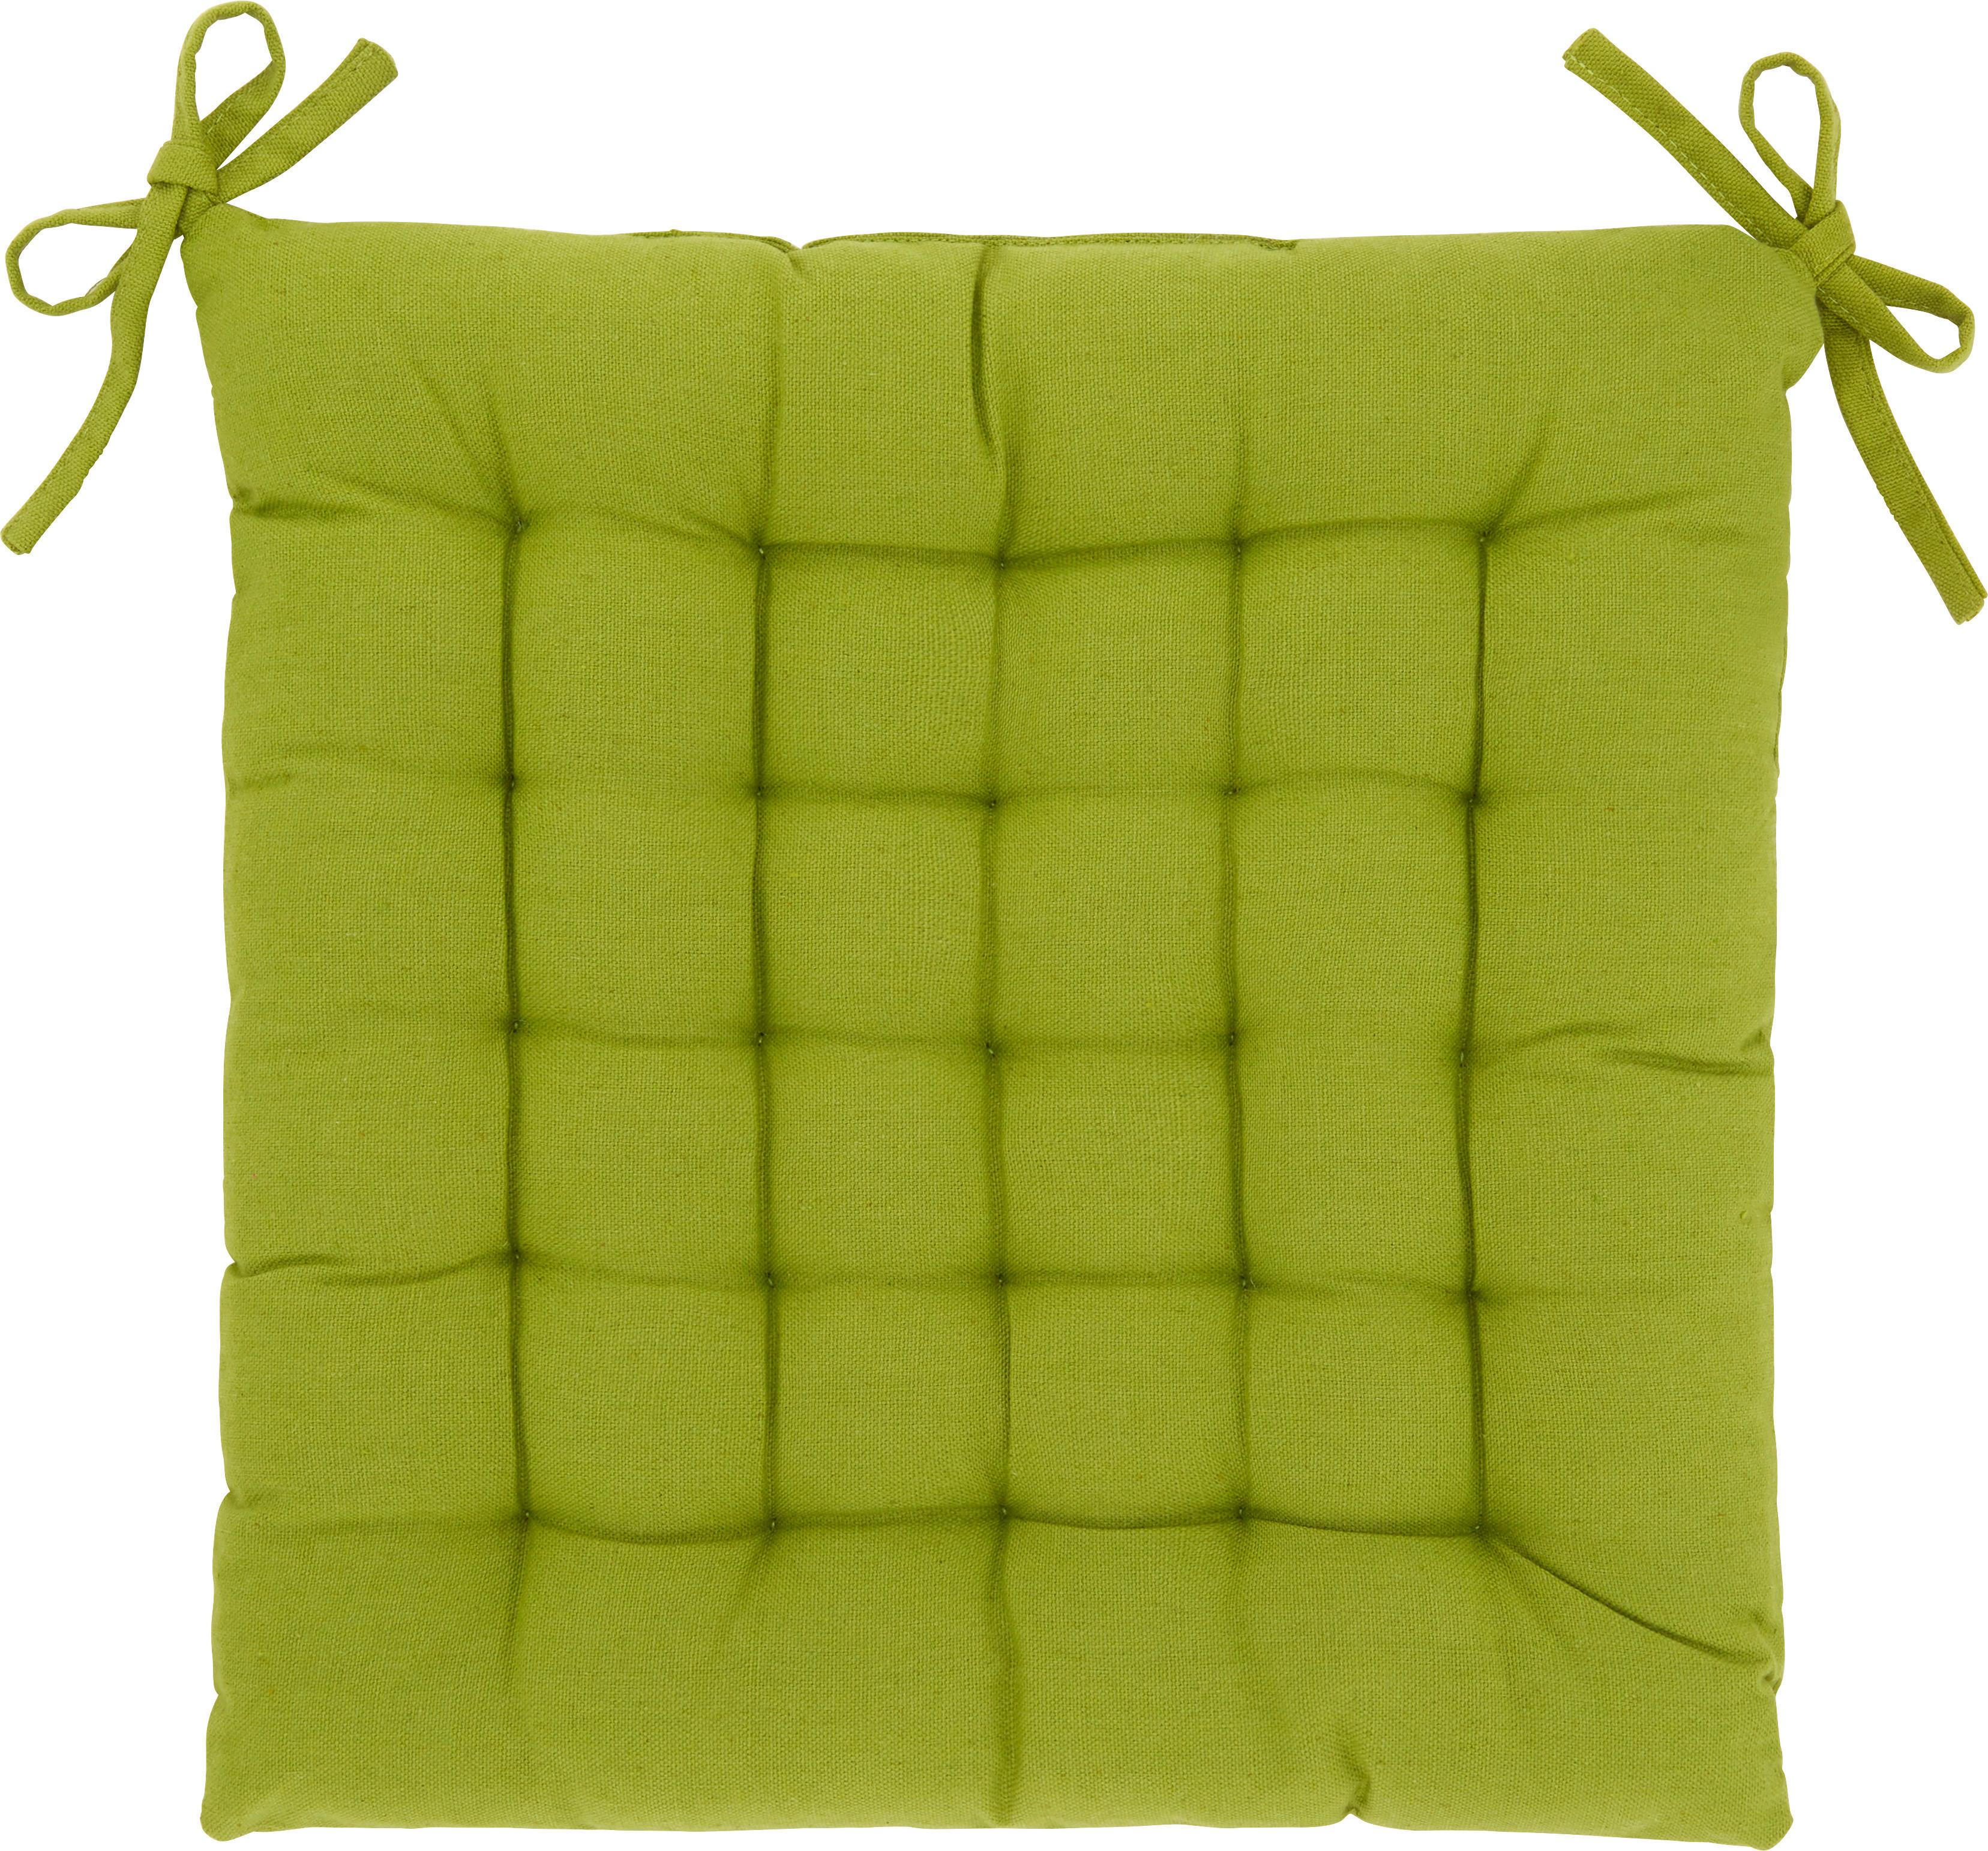 Poduška Na Sedenie Anke, 40x40cm - zelená, textil (40/40cm) - Modern Living